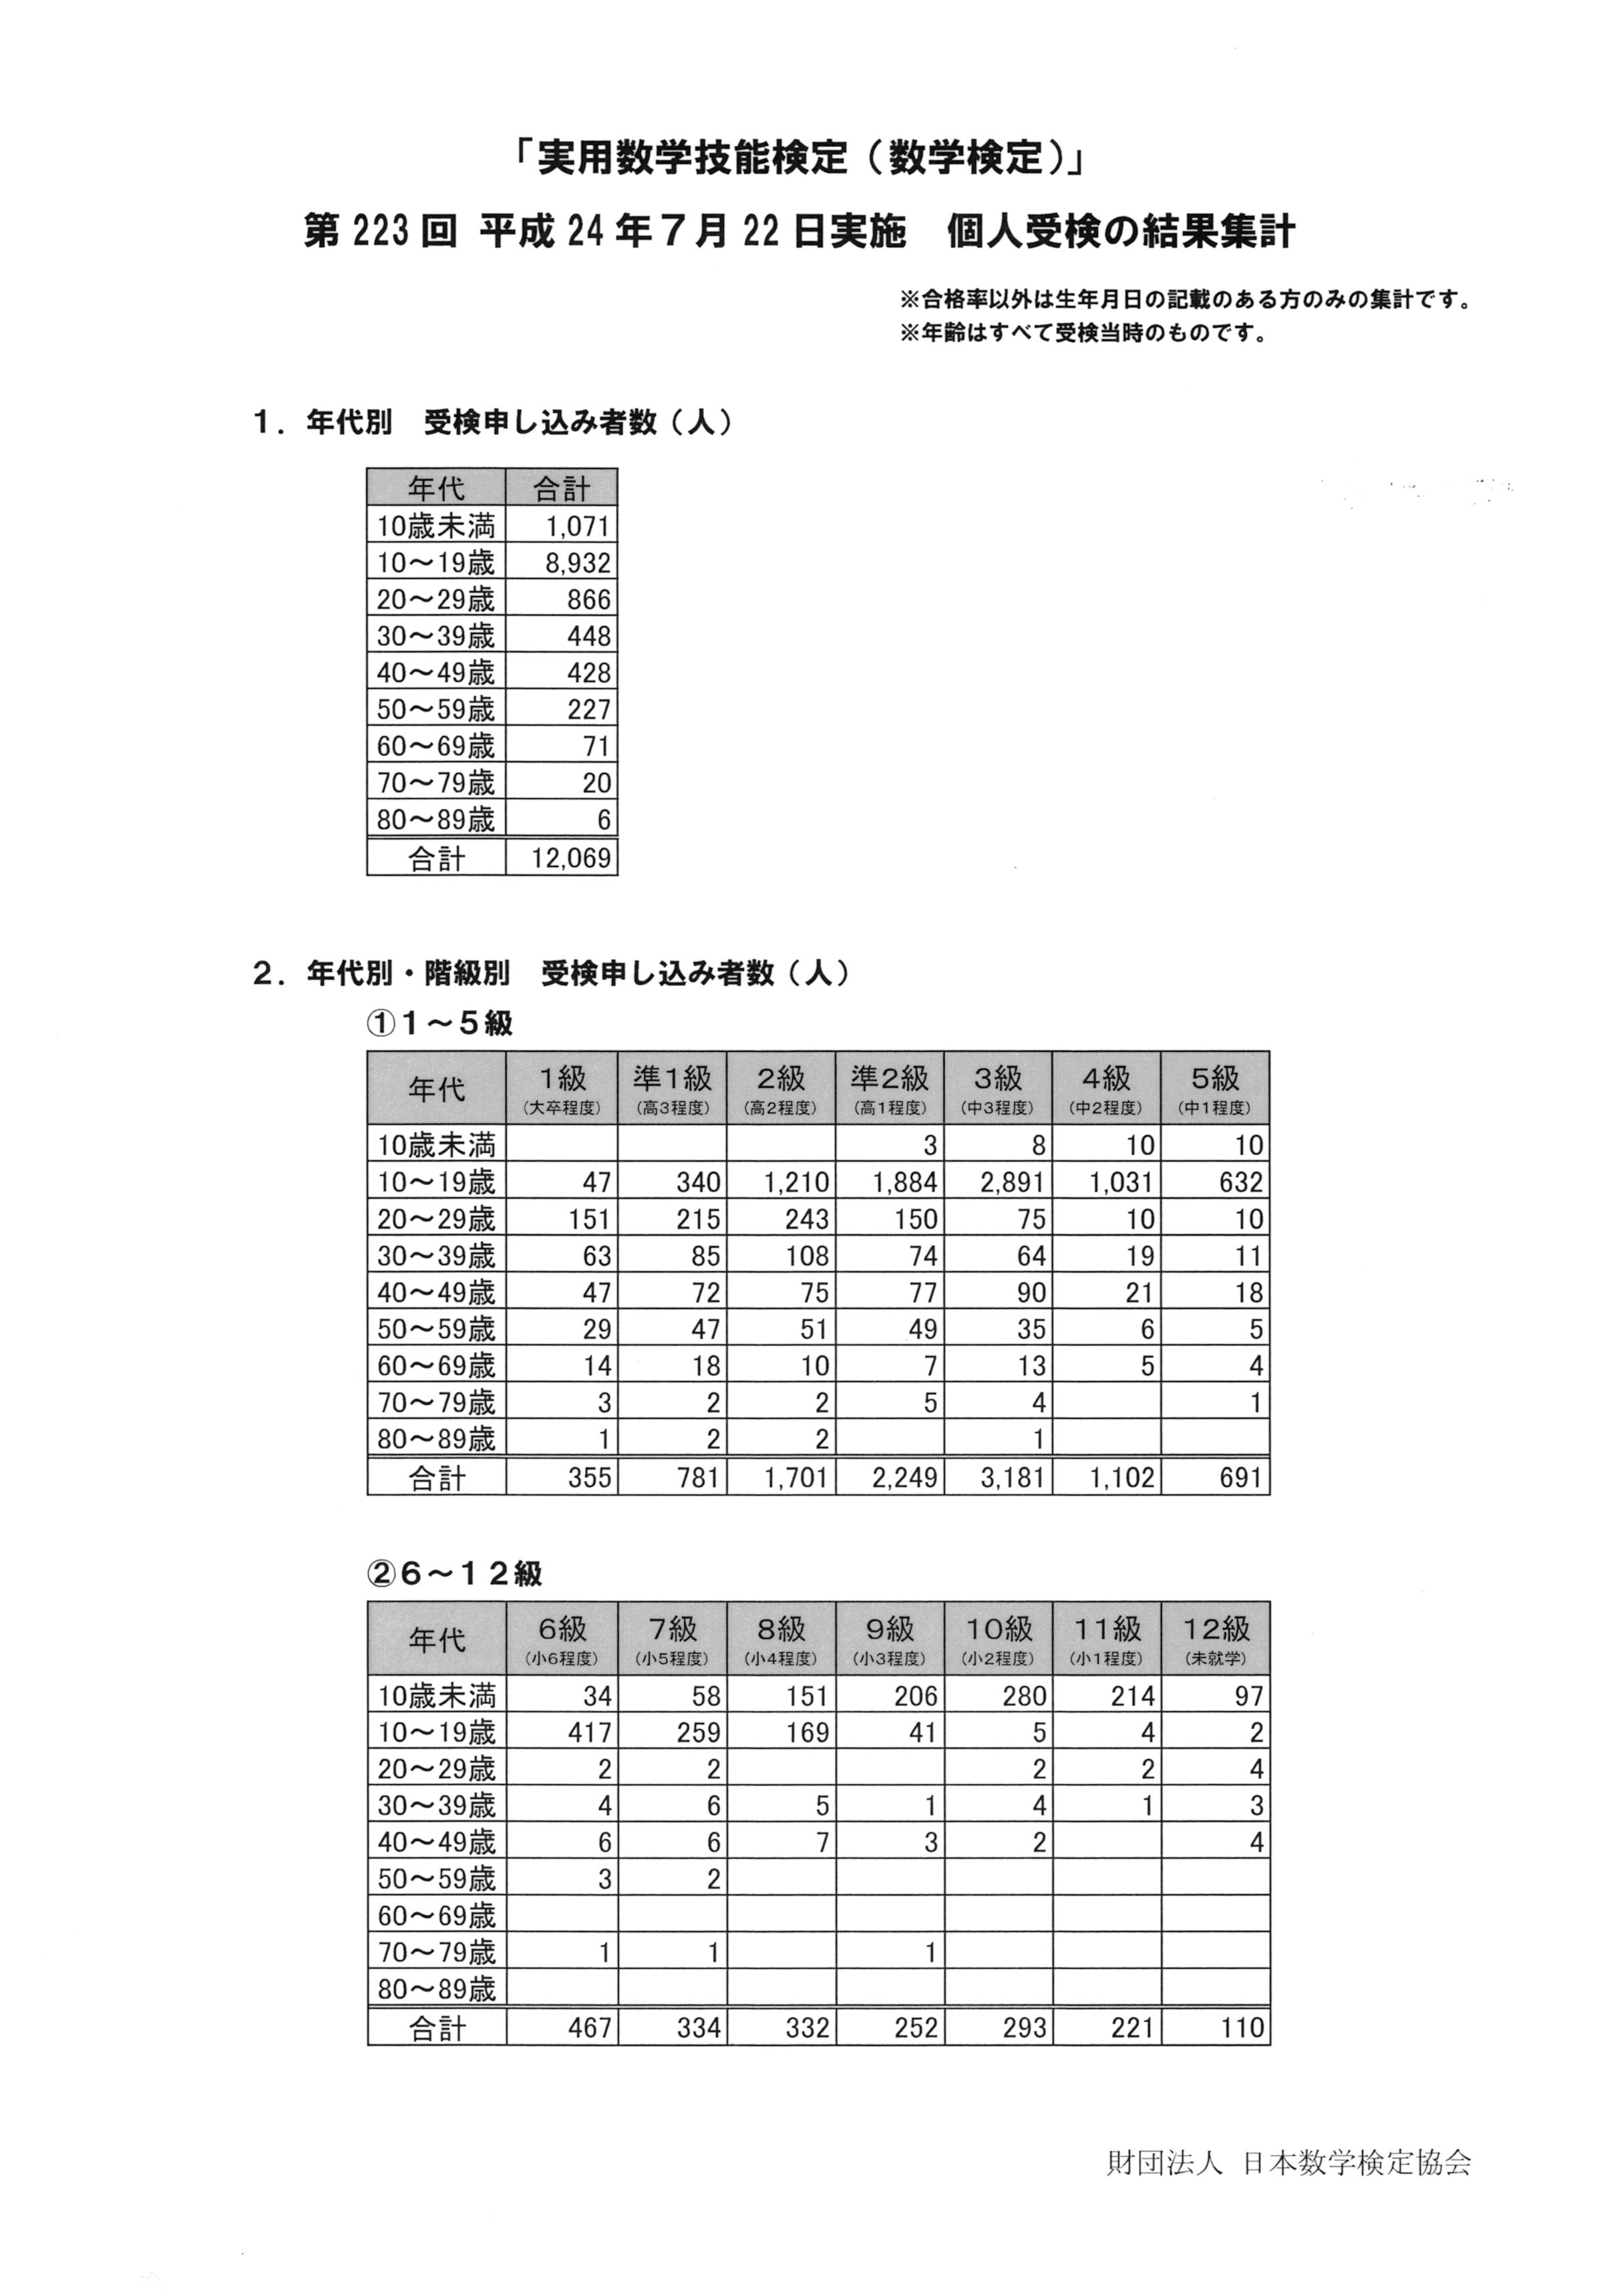 歳 過去最高齢 が 数学検定 を受検 合格率7 の1級に15歳が合格 第223回 平成24年 12年 7月22日実施 個人受検の結果集計 財団法人日本数学検定協会のプレスリリース